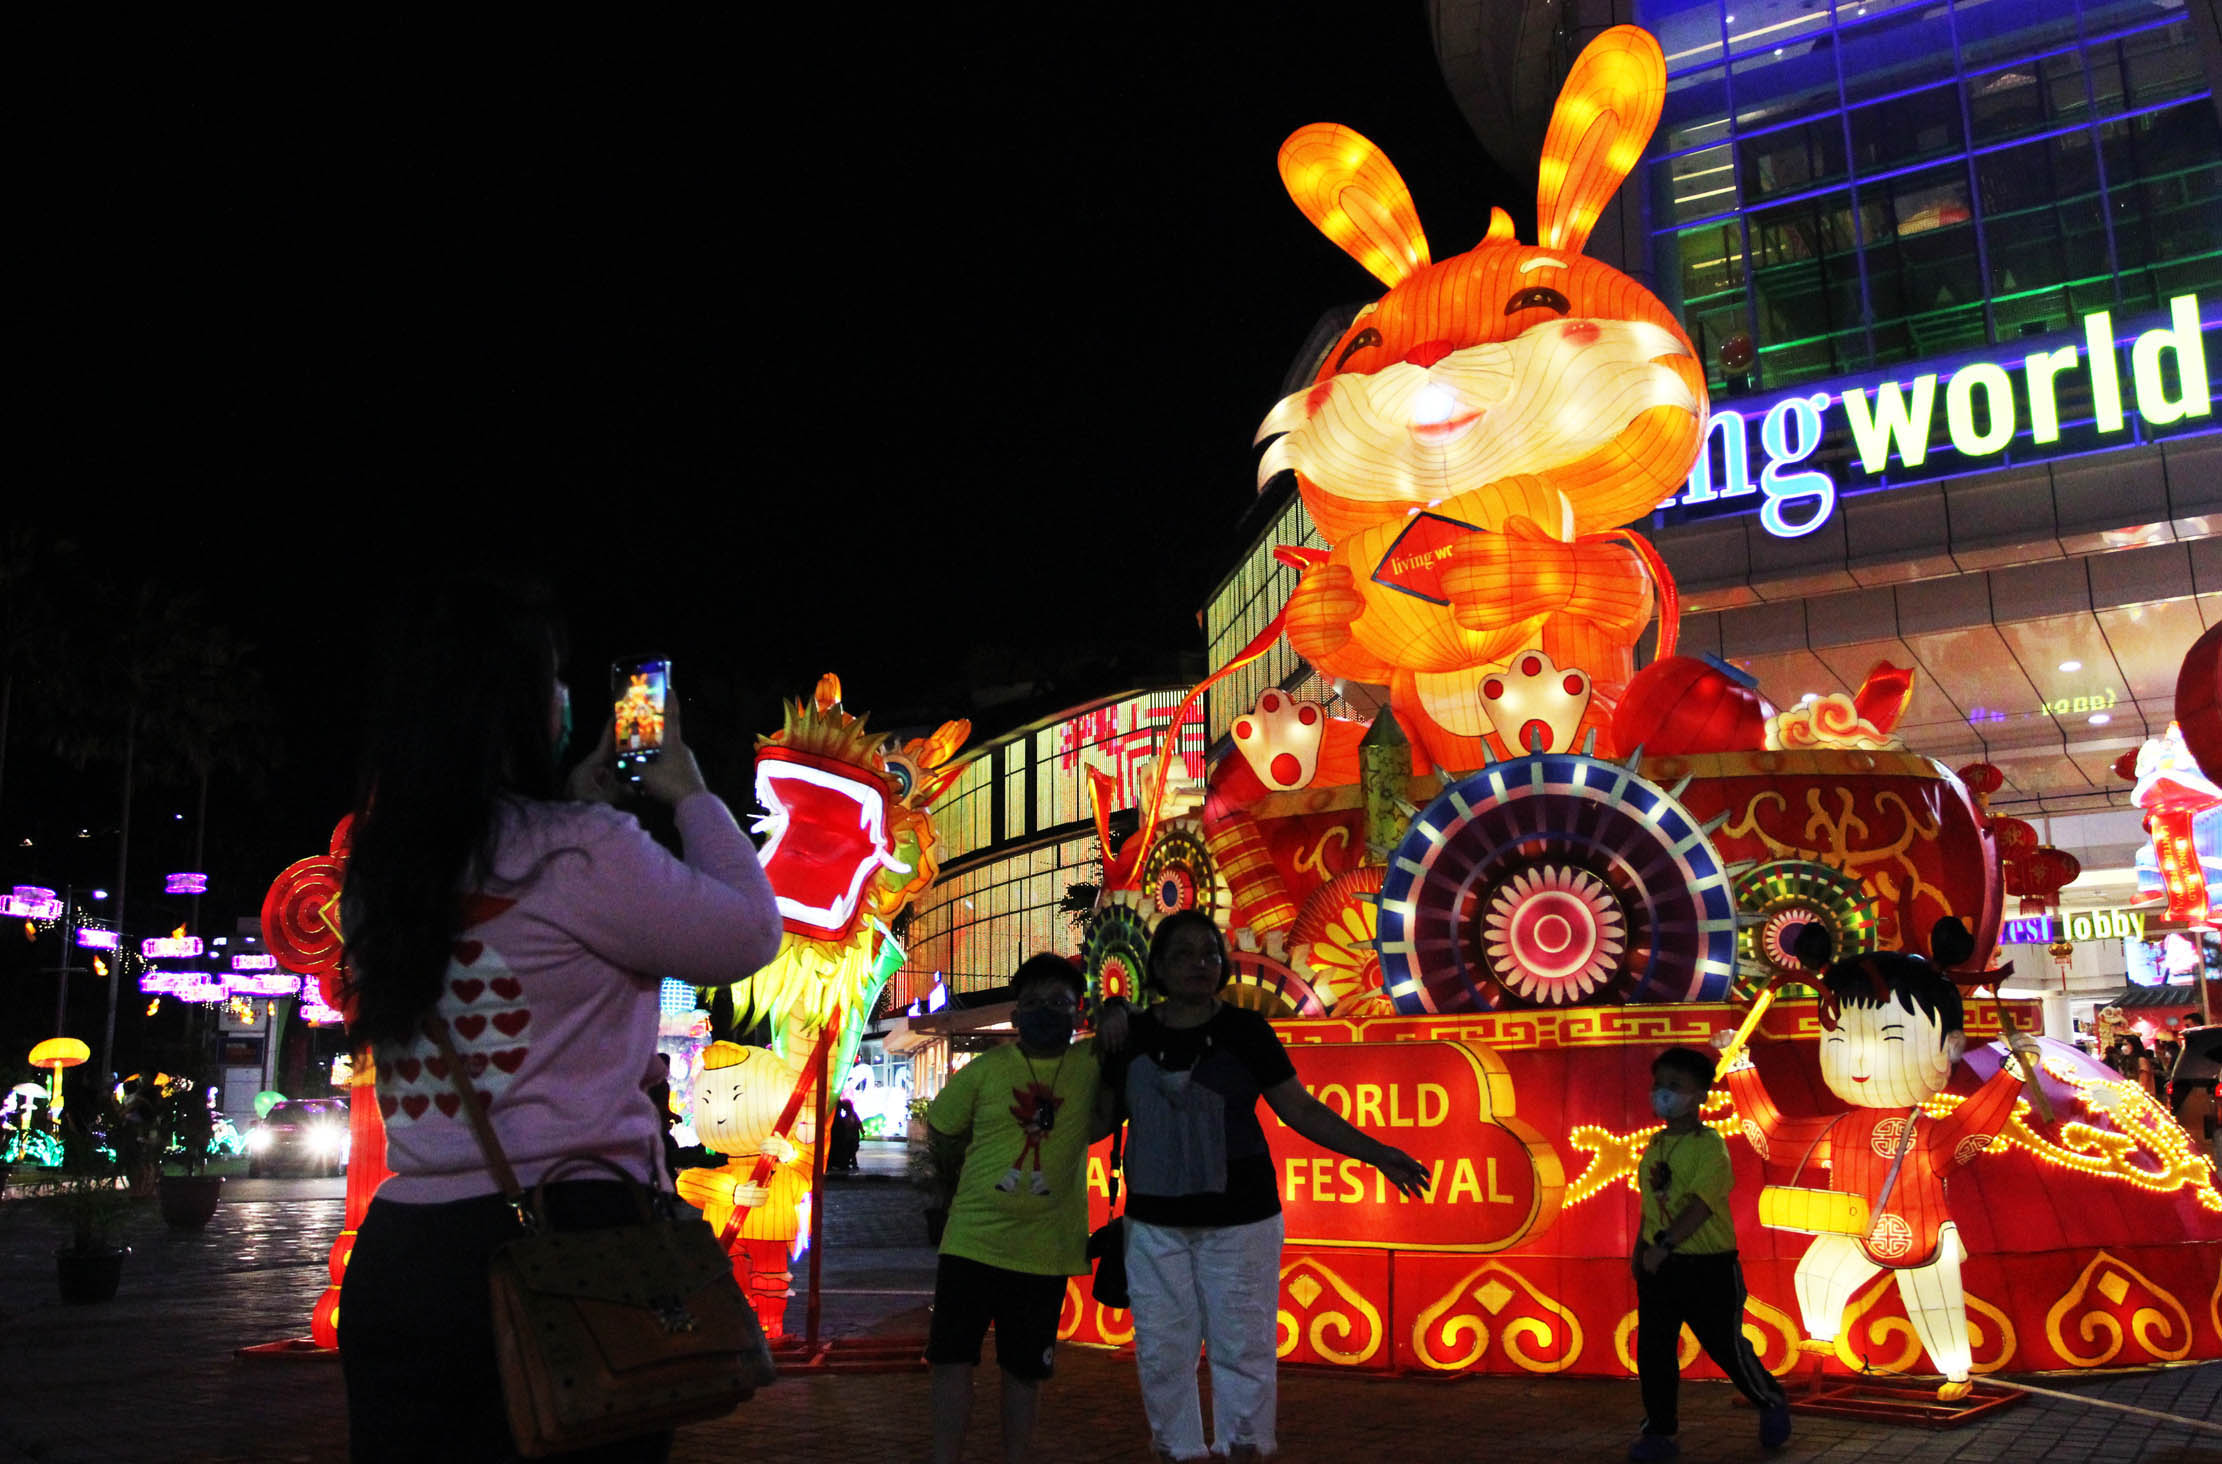 Pengunjung tengah menikmati deretan lampion dengan berbagai macam ukuran dan bentuk menarik dalam Festival Lampion yang berlangsung di Mal Living World Tangerang, Sabtu 21 Januari 2023. Foto : Panji Asmoro/TrenAsia